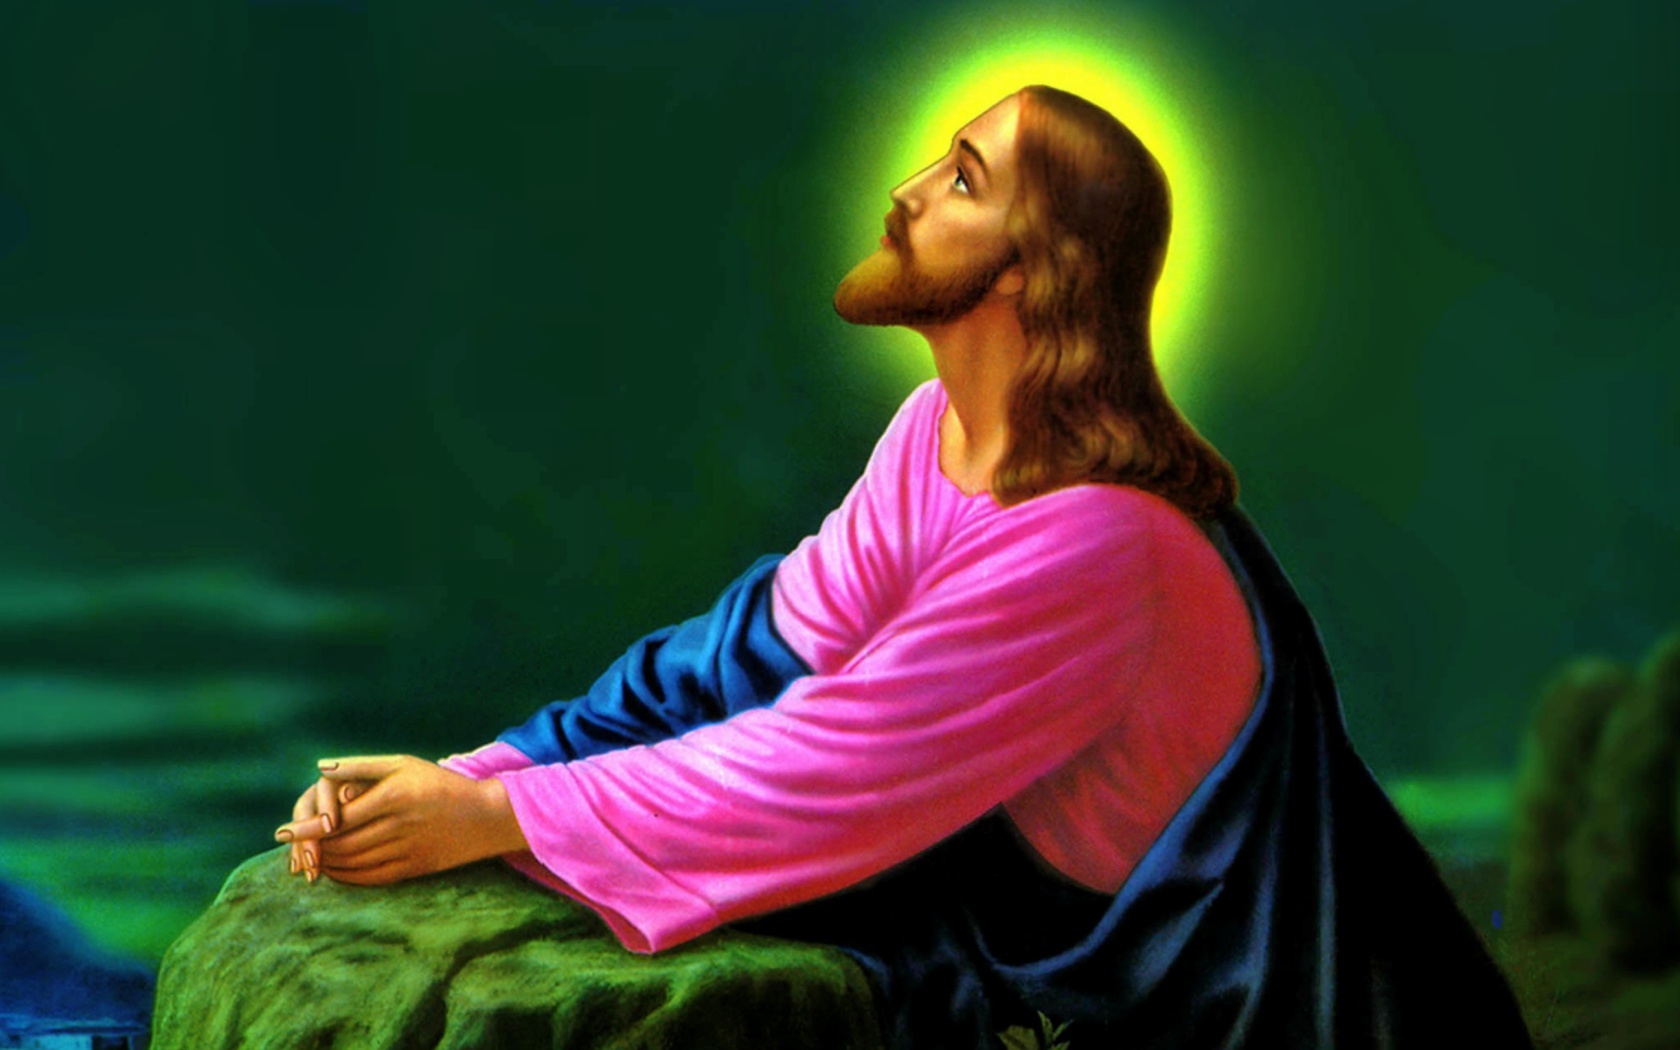 Wy leare fan Jezus hoe te bidden, dit is doe't Kristus de Heit spruts